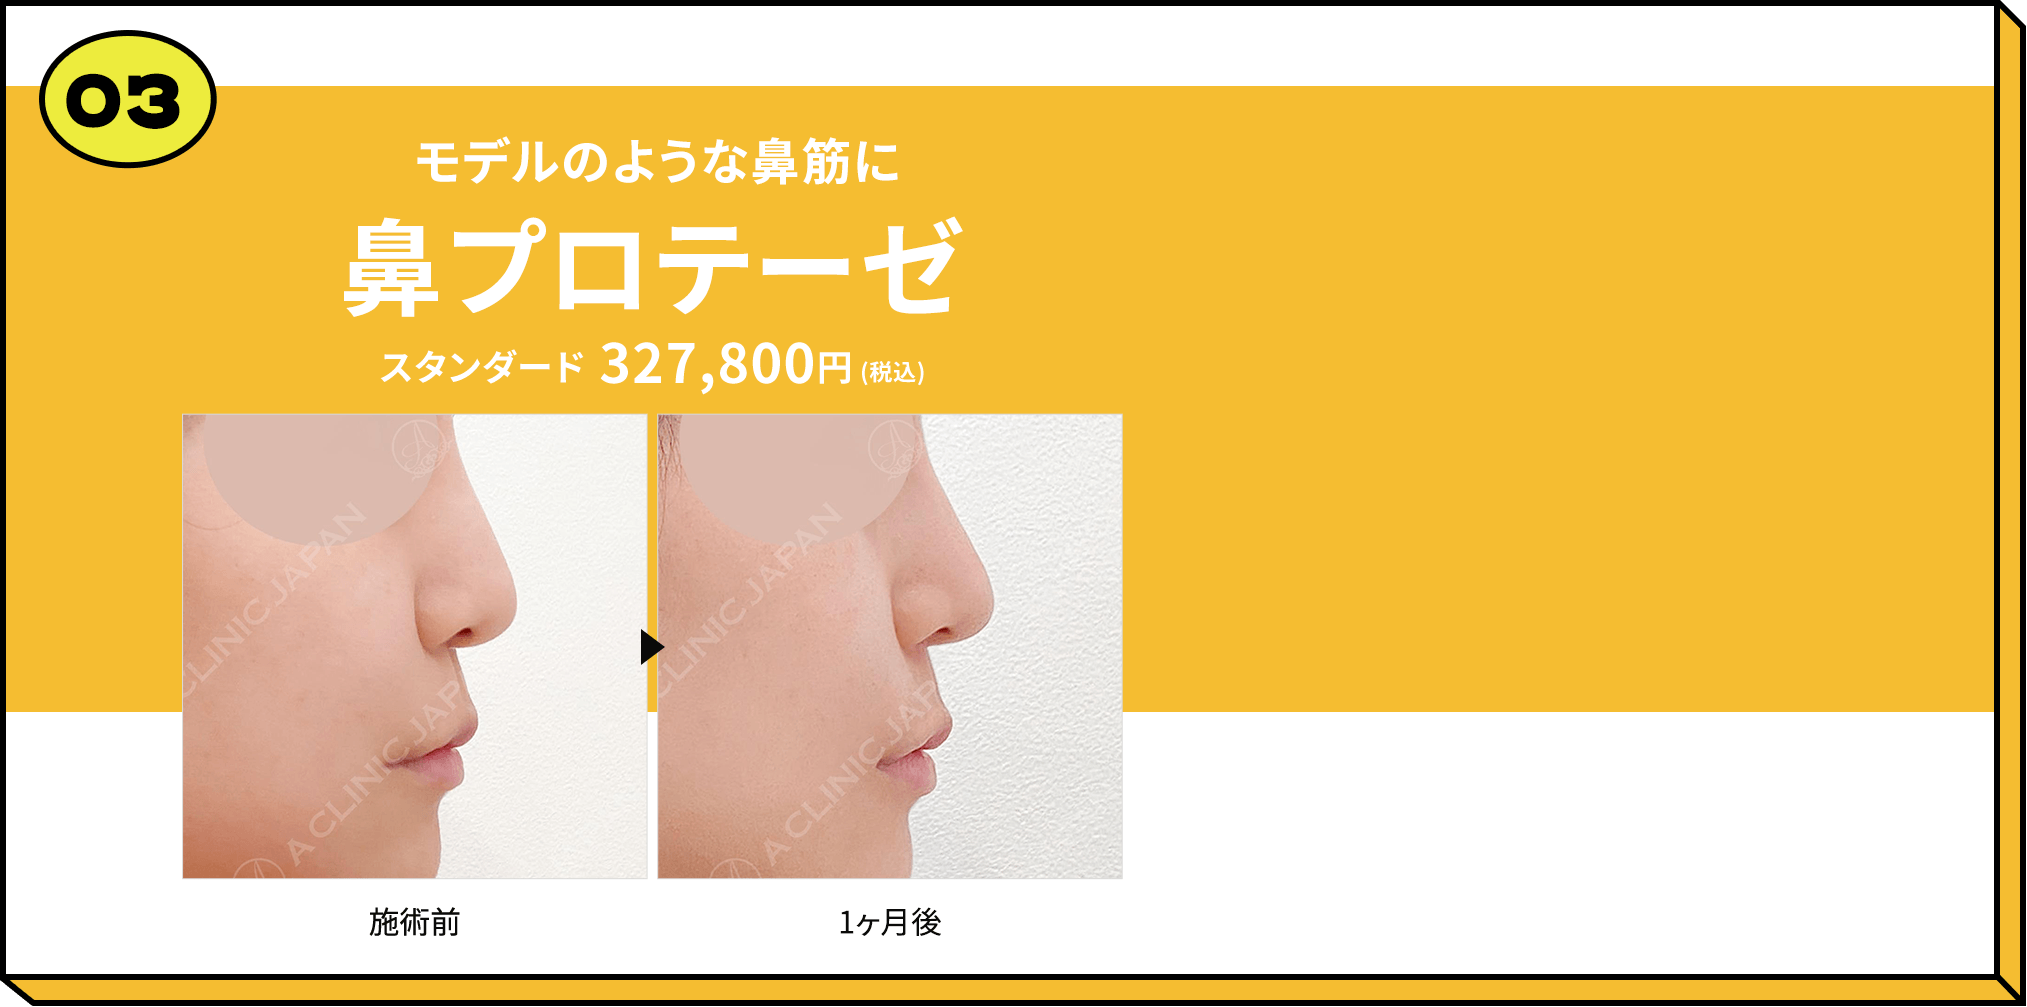 03 モデルのような鼻筋に鼻プロテーゼ